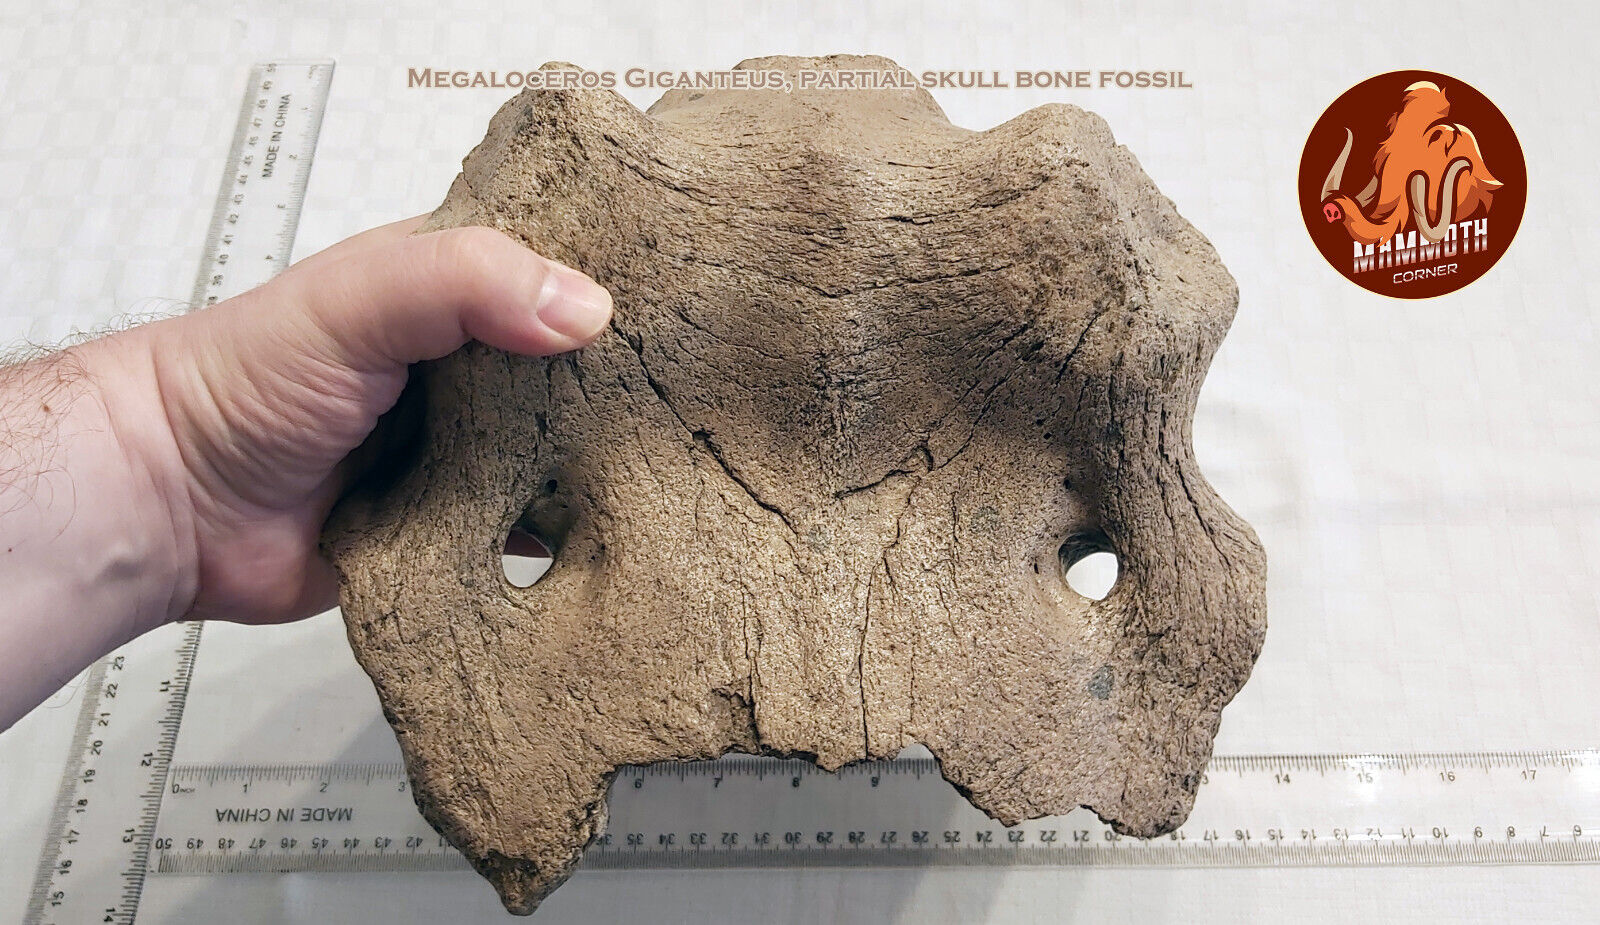 Megaloceros Giganteus (Irish Elk) partial skull bone - fossil